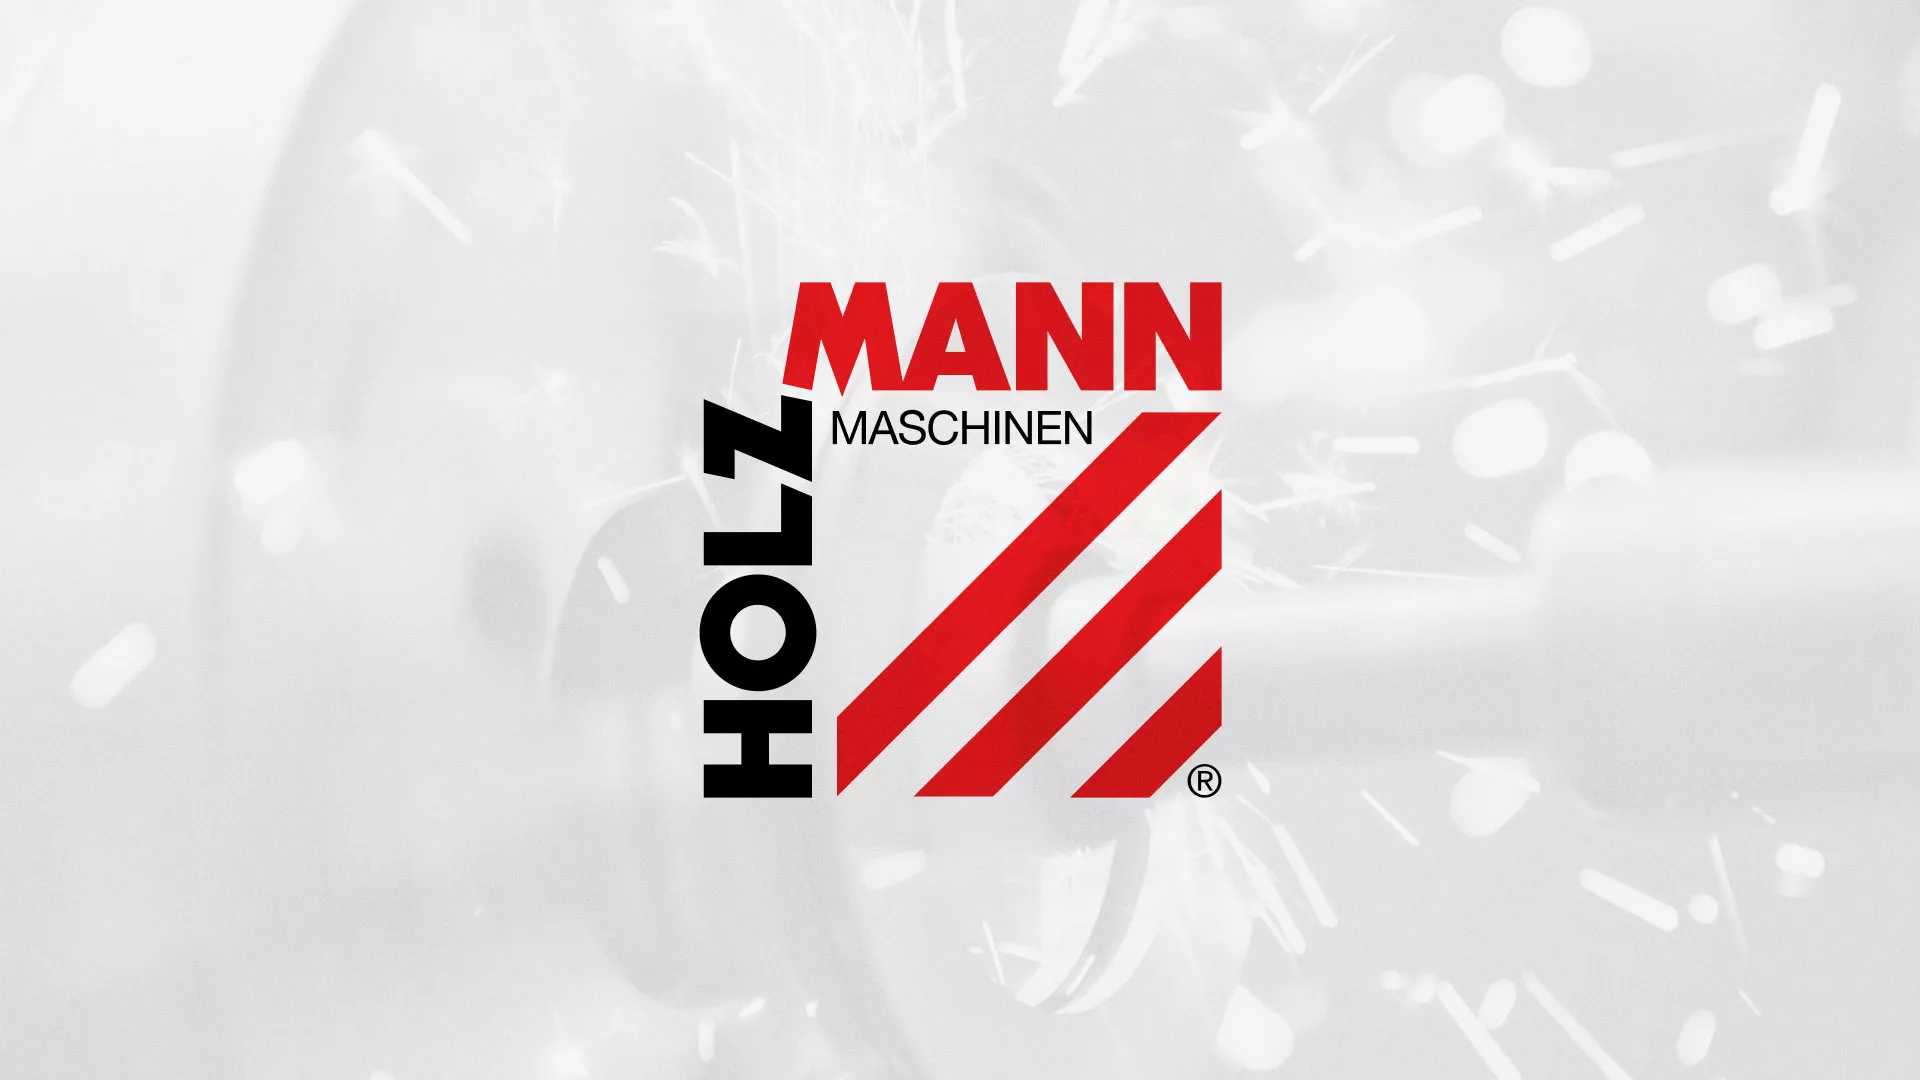 Создание сайта компании «HOLZMANN Maschinen GmbH» в Петровске-Забайкальском